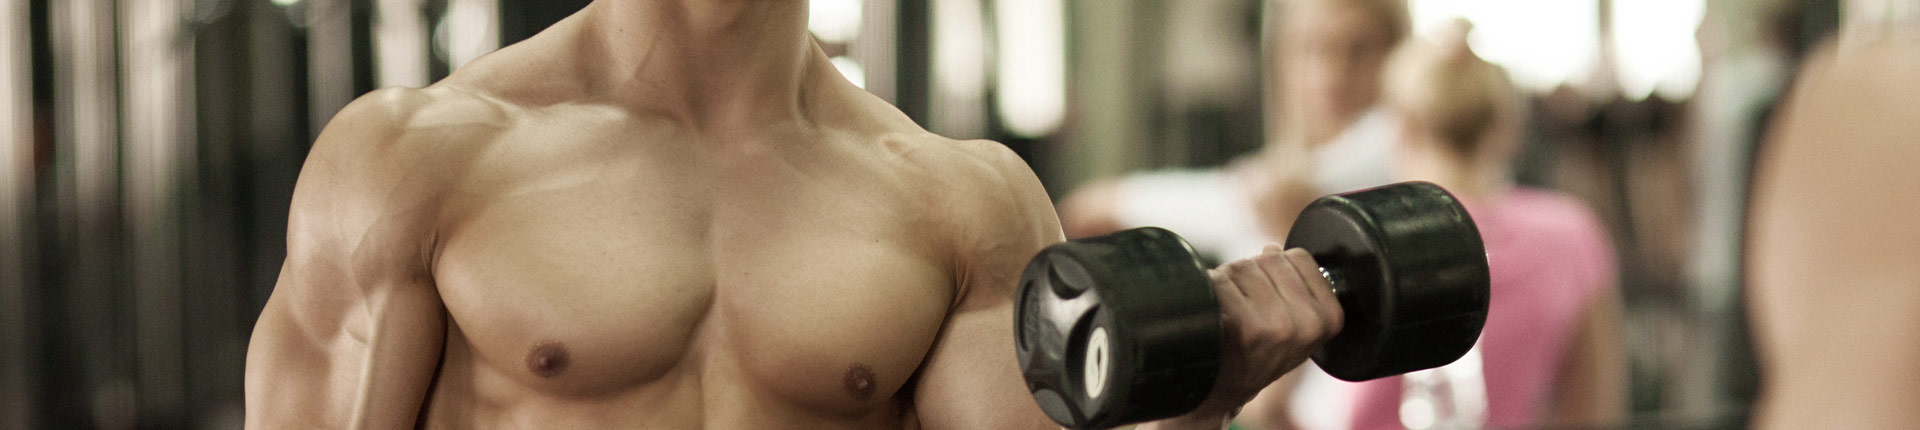 Trening typu split może ograniczać przyrosty mięśniowe 